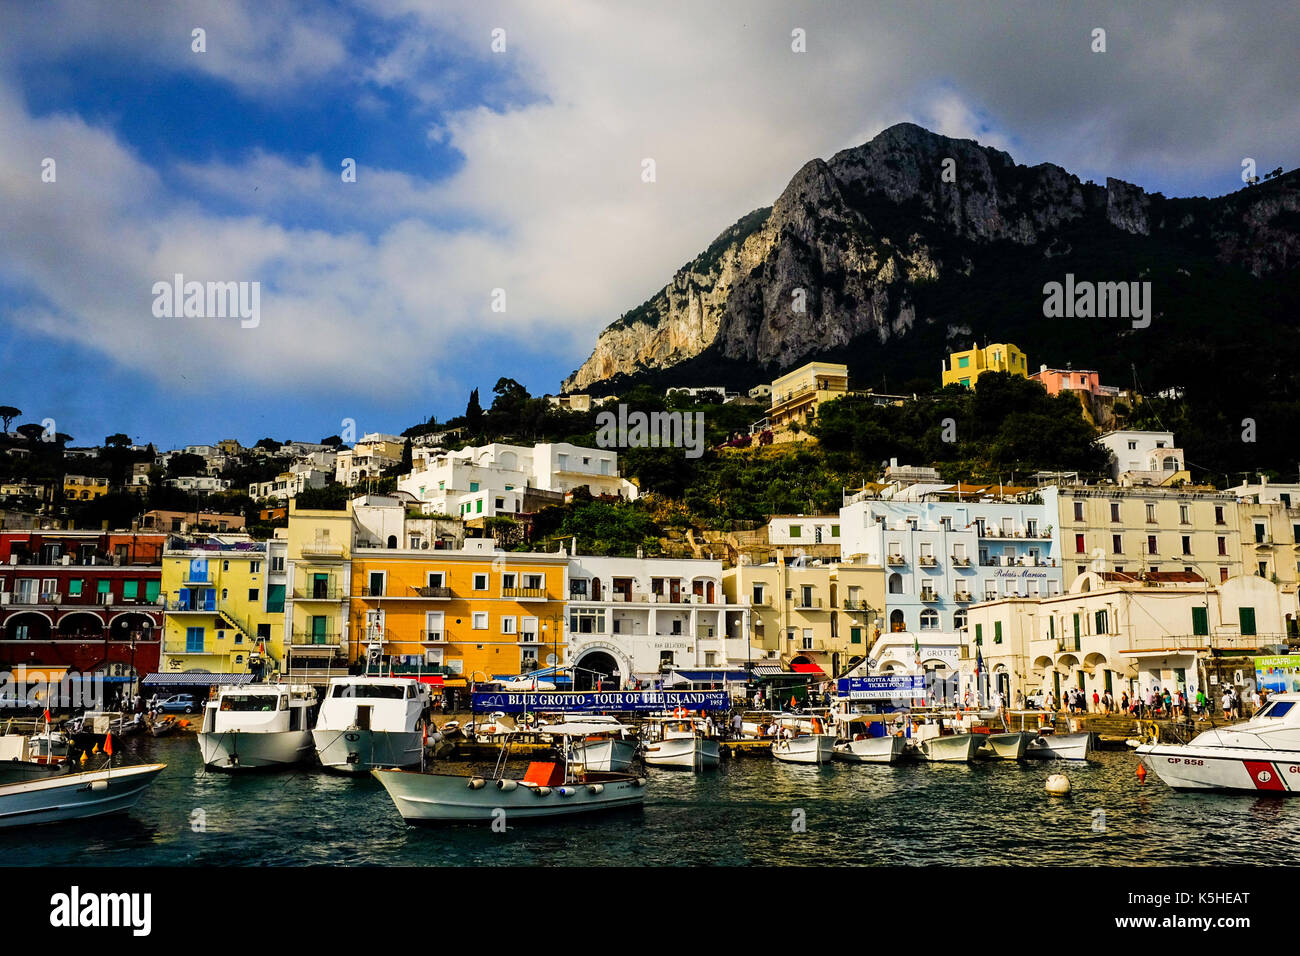 Vues générales de Capri, Italie y compris des personnes, des touristes, des boutiques, des falaises et de belles collines le 4 juillet 2016. Banque D'Images